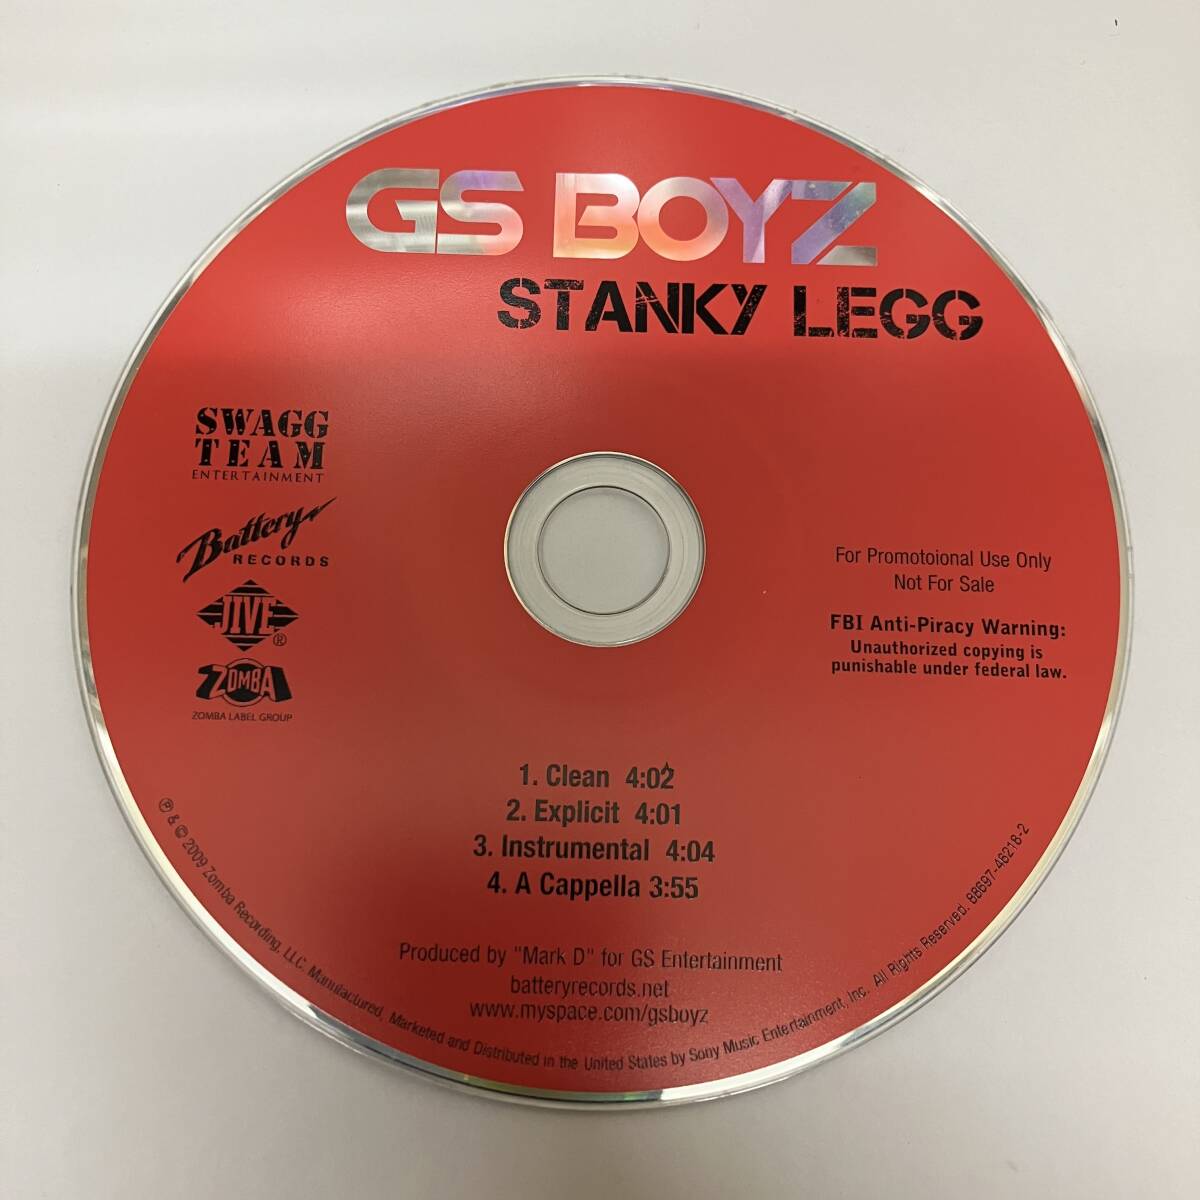 裸21 HIPHOP,R&B GS BOYZ - STANKY LEGG INST,シングル,PROMO盤 CD 中古品_画像1